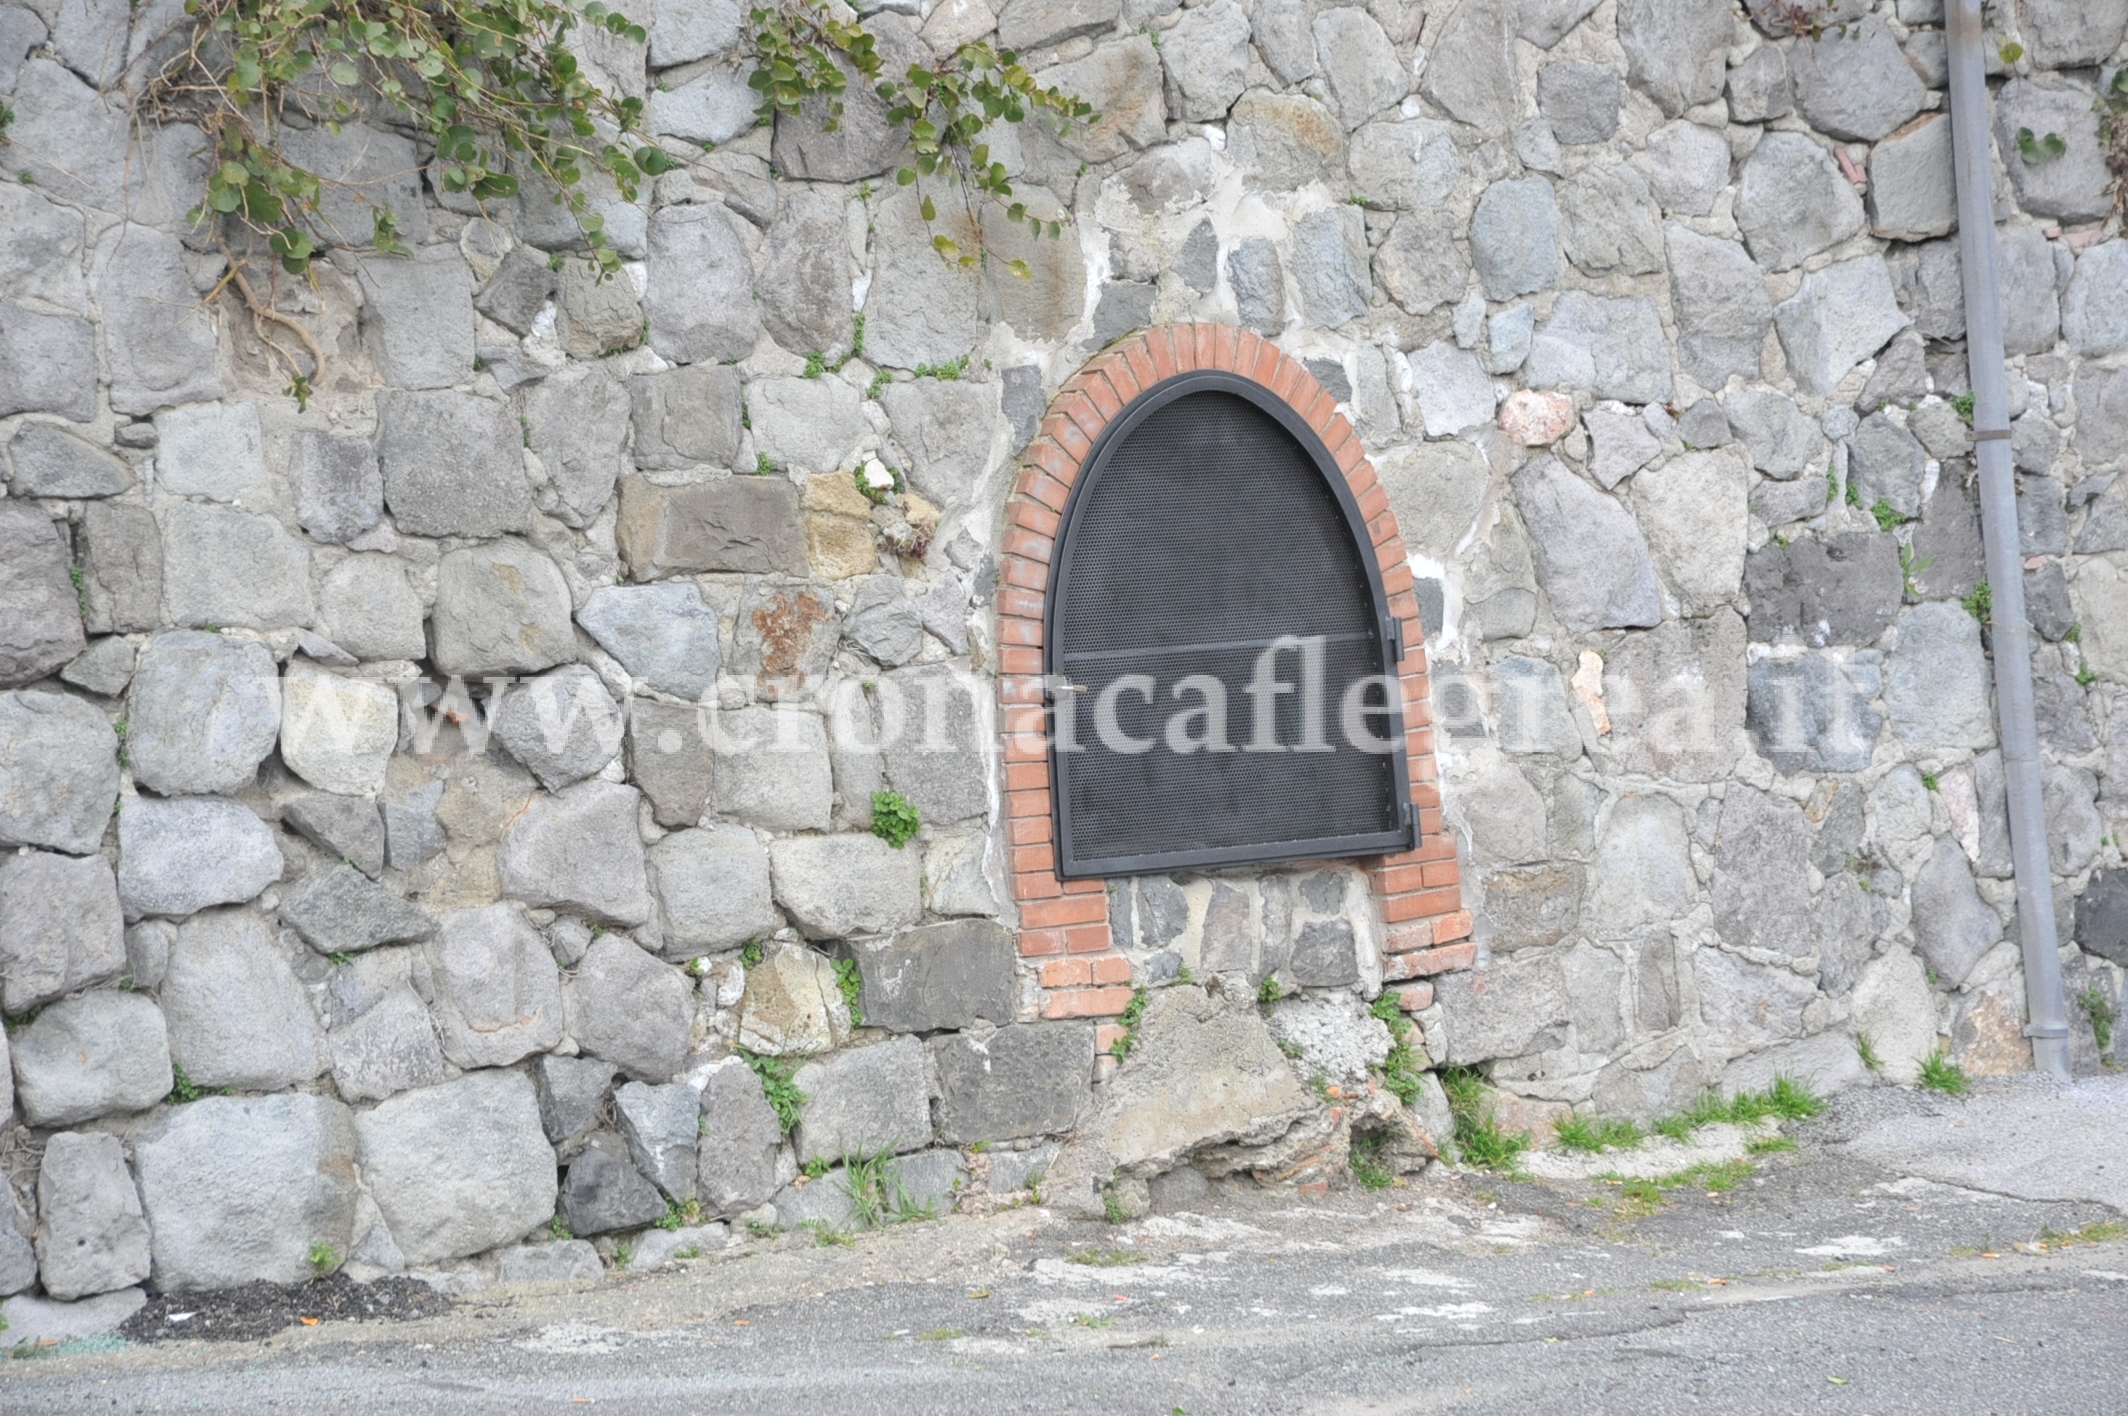 FOTONOTIZIA/ Chiuso il cunicolo degli orrori in via Vecchia San Gennaro